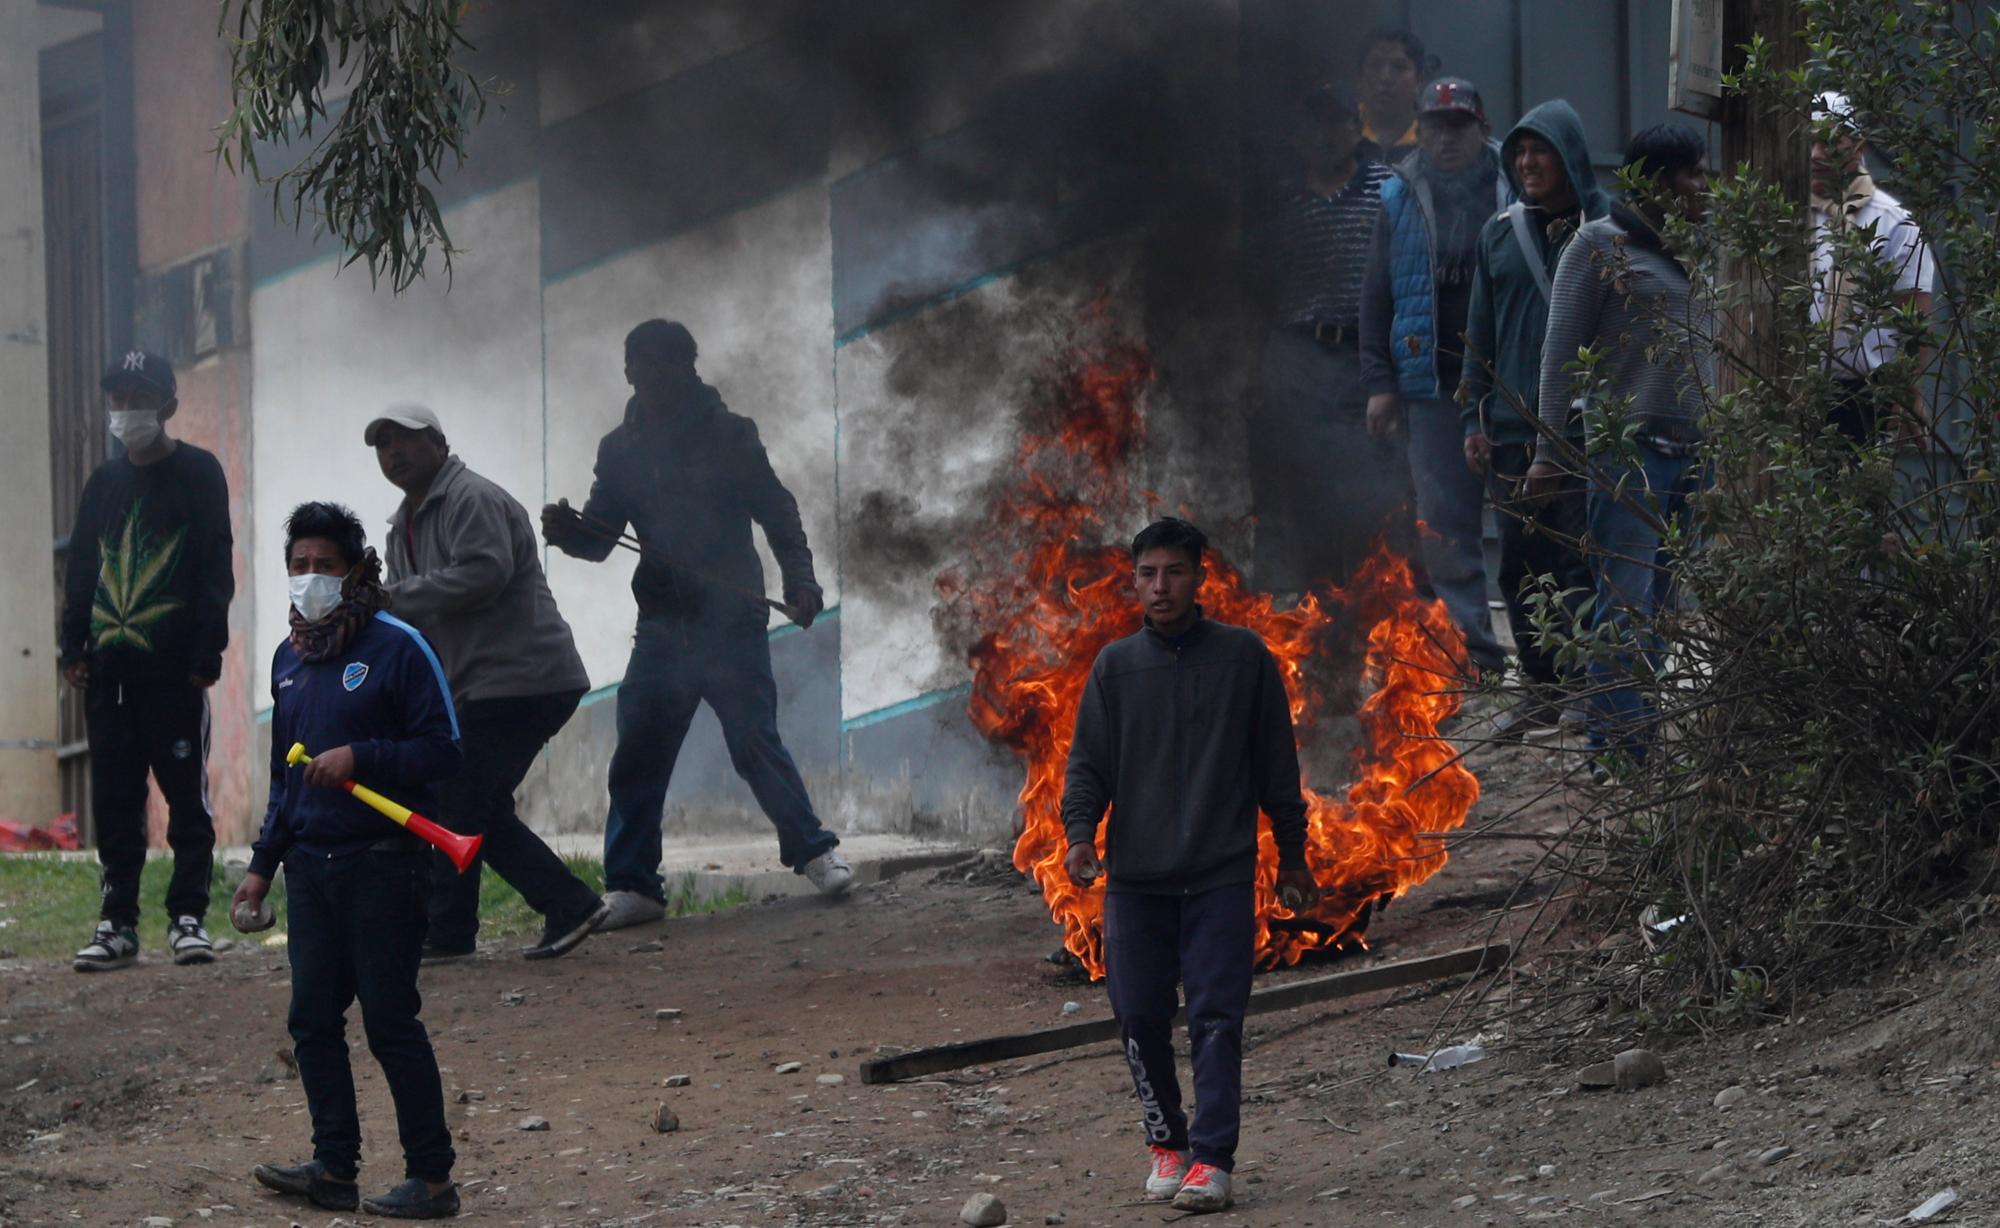 Los partidarios del ex presidente Evo Morales se enfrentan con la policía en La Paz, Bolivia, el lunes 11 de noviembre de 2019. La renuncia de Morales el 10 de noviembre, bajo la creciente presión de los militares y el público después de su victoria en la reelección desencadenó semanas de acusaciones de fraude y manifestaciones mortales, deja un vacío de poder y un país desgarrado por las protestas contra y por su gobierno. 